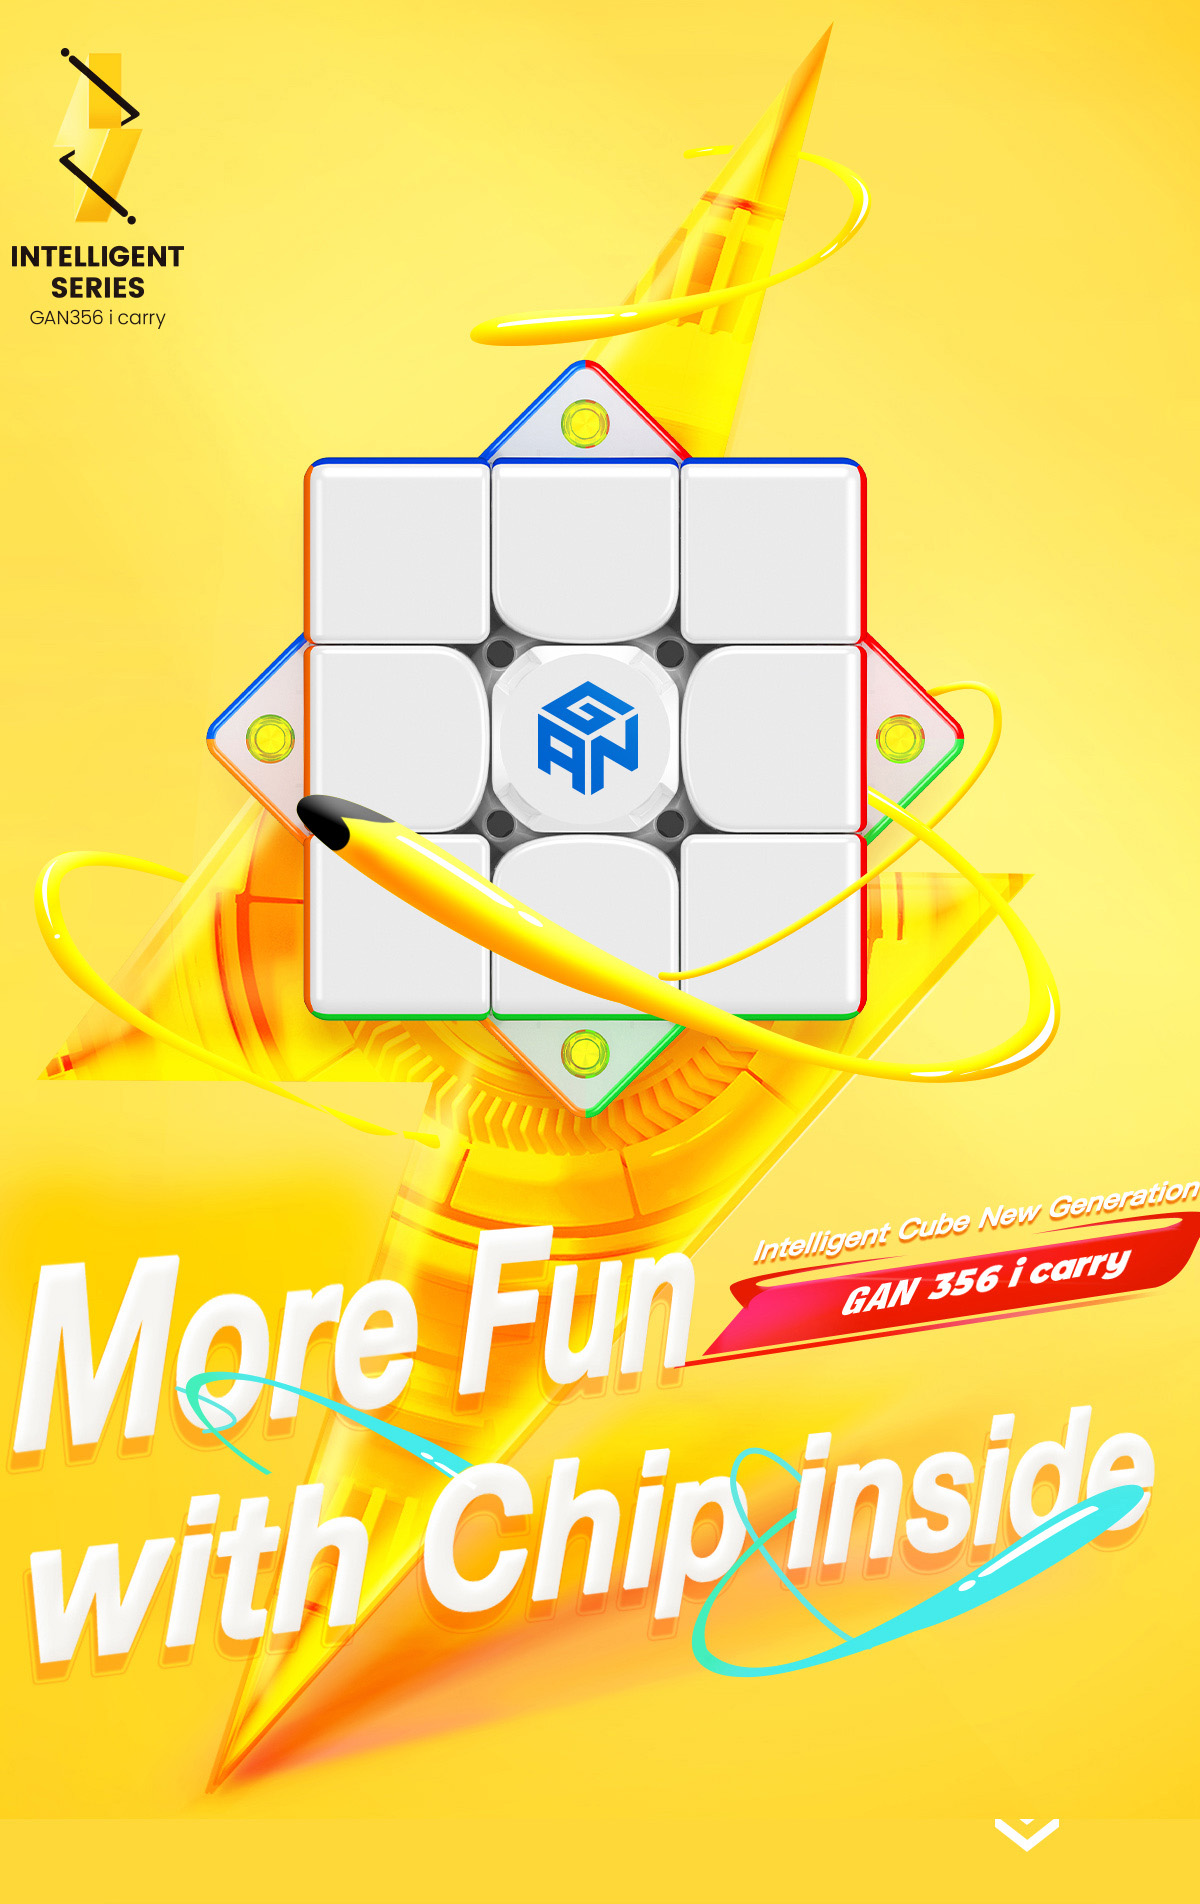 Cube Station official website - GAN Intelligent cube GAN356i